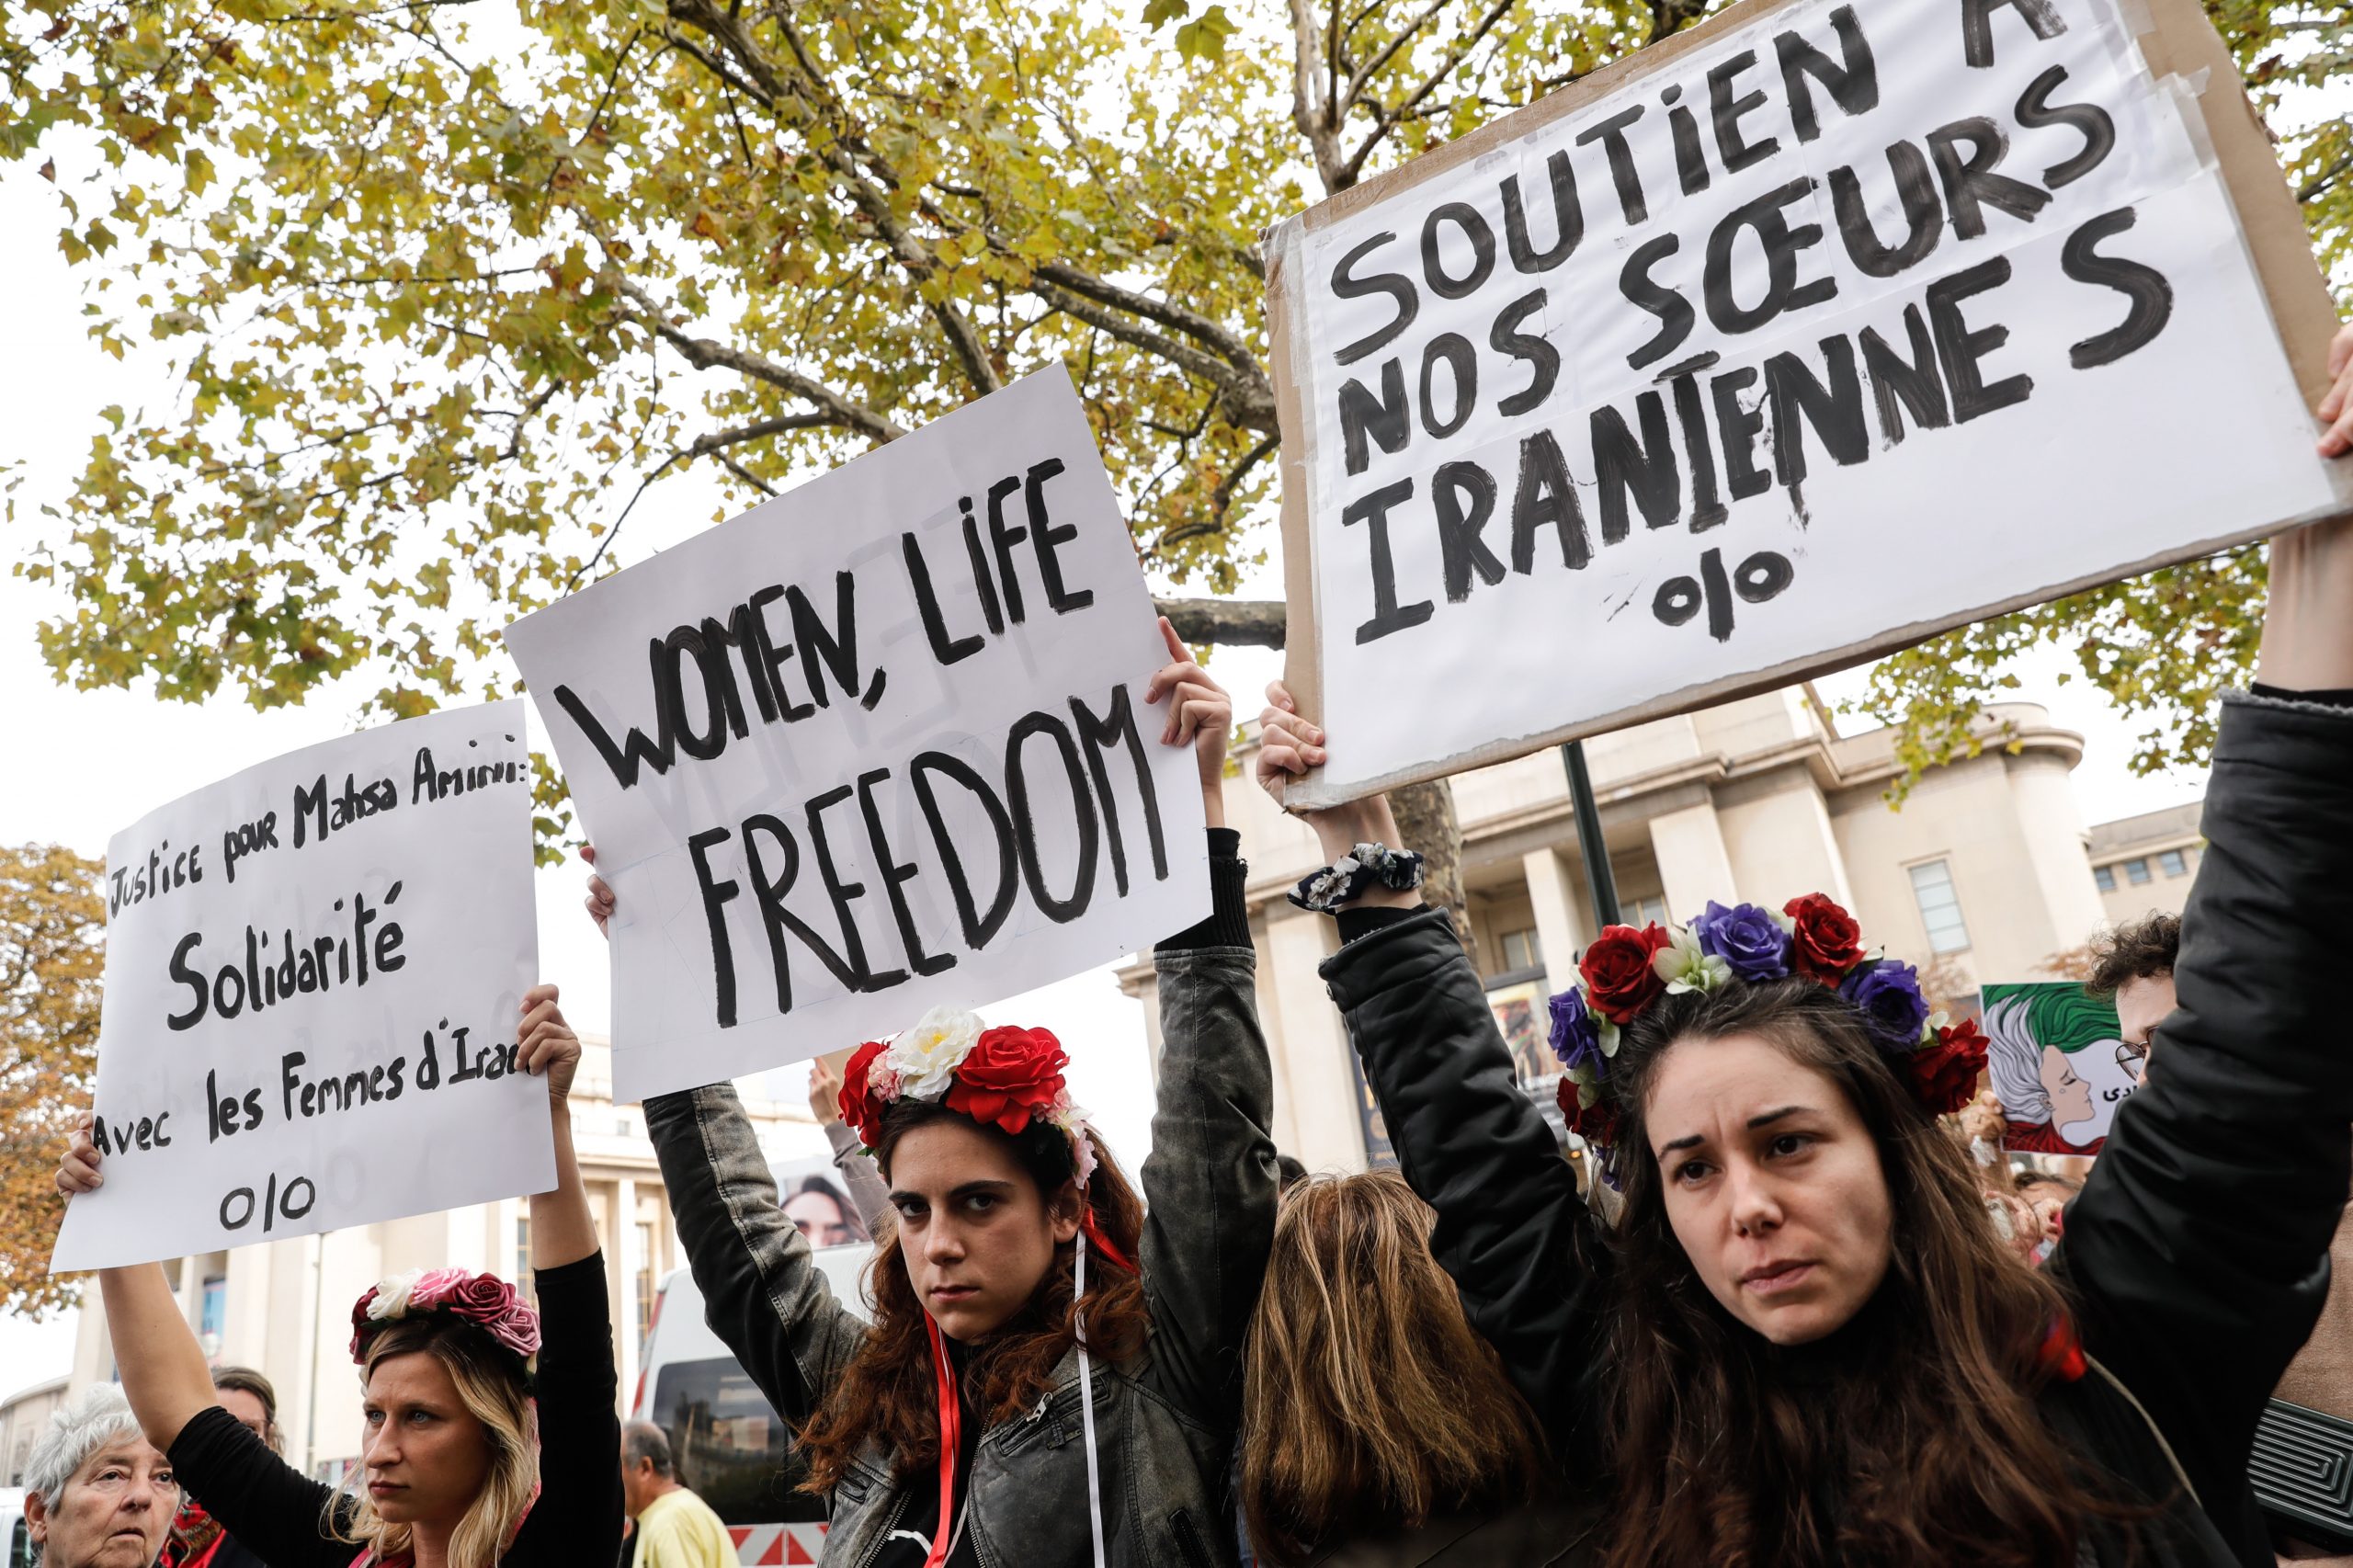 抗议伊朗女子阿米尼之死 巴黎伦敦爆发警民冲突